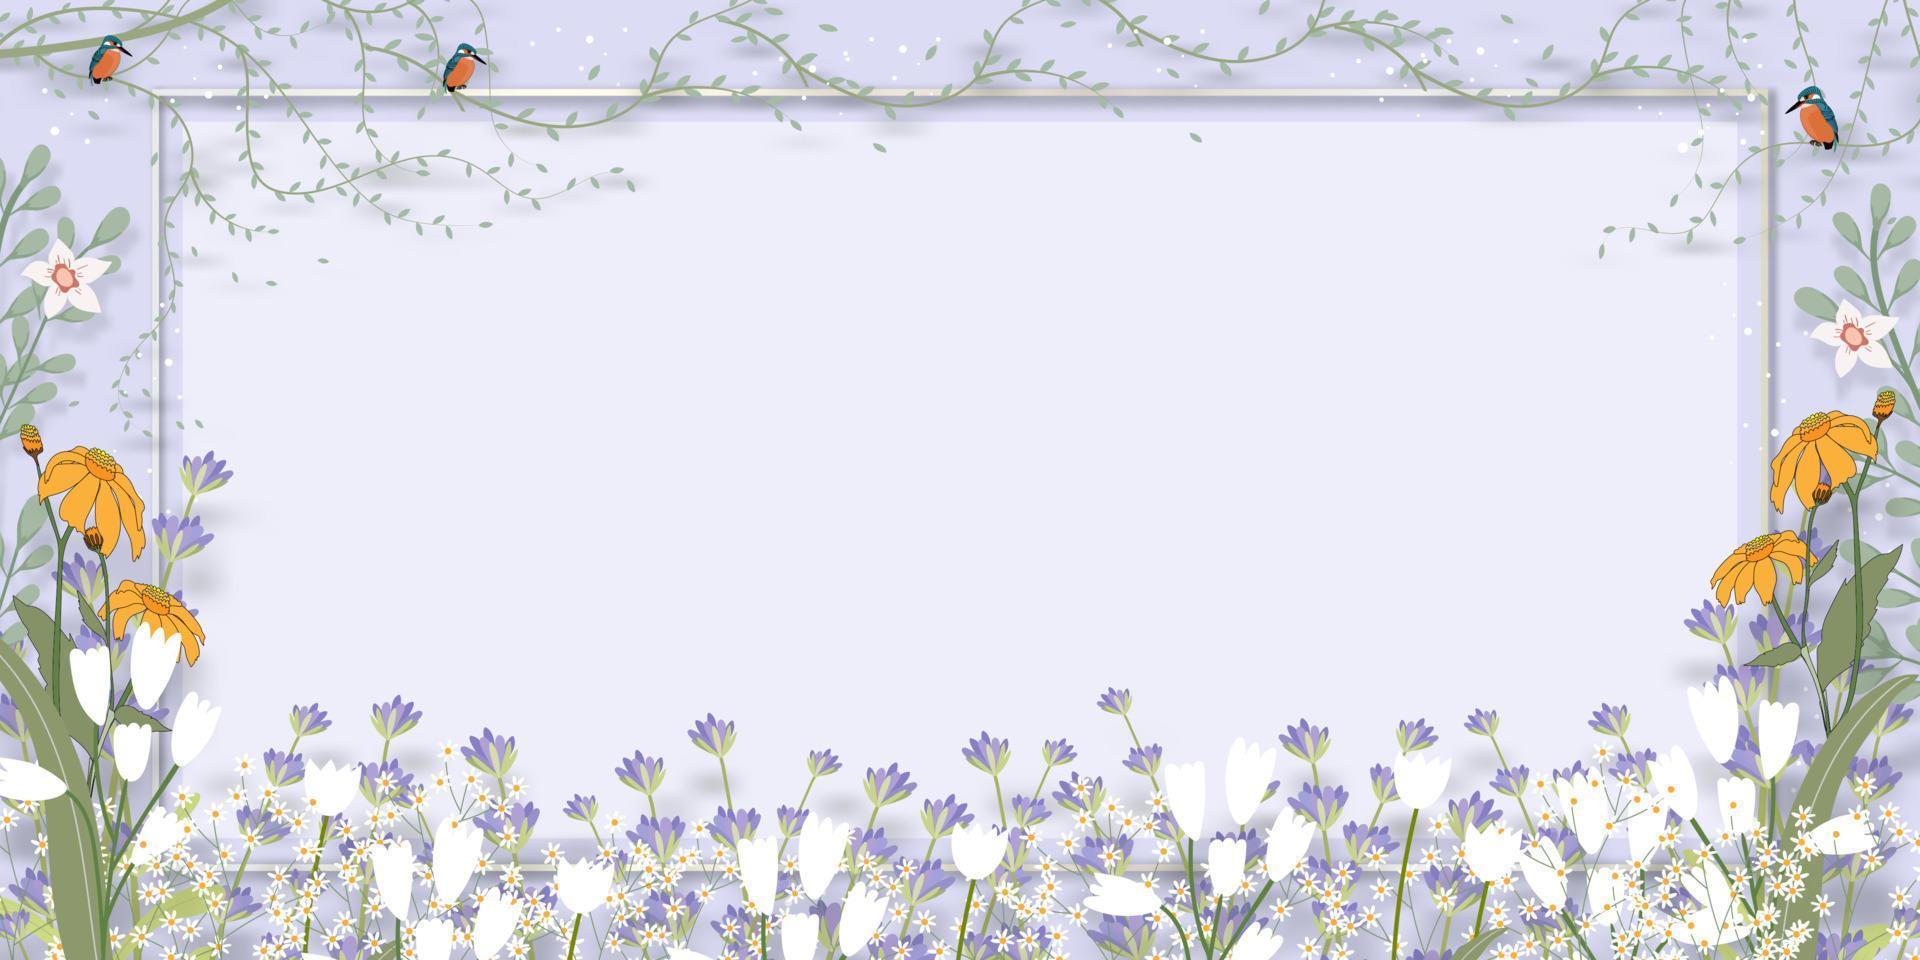 fond de printemps avec bordure de fleur de lavande violette sur fond de mur violet, illustration vectorielle toile de fond horizontale du cadre de la flore en fleurs avec oiseau, bannière de vacances pour la vente de printemps ou d'été vecteur